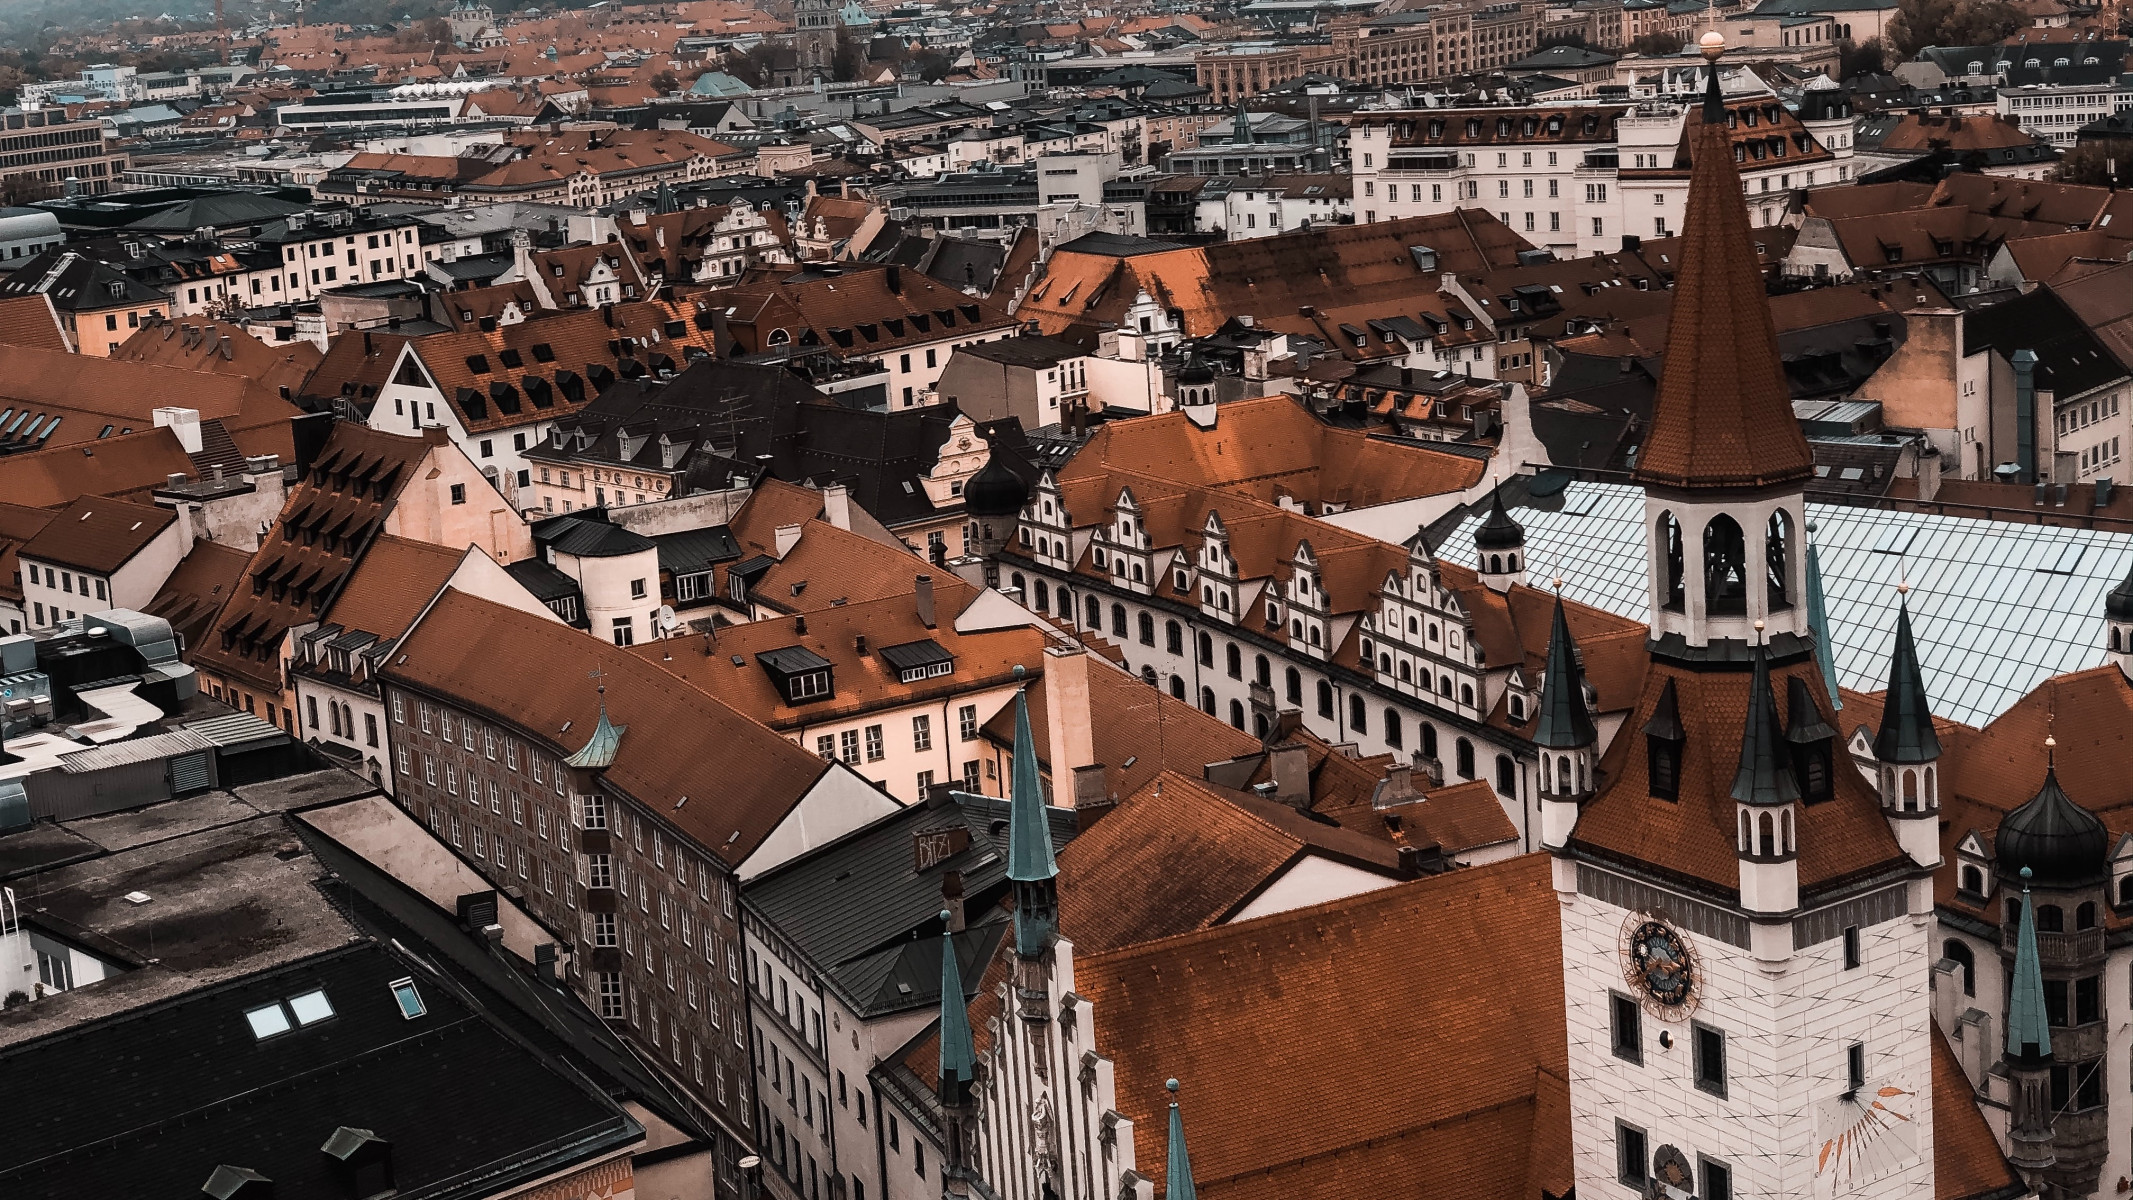 Kompaktné mesto – Bratislava zajtrajška či nedostižná utópia?